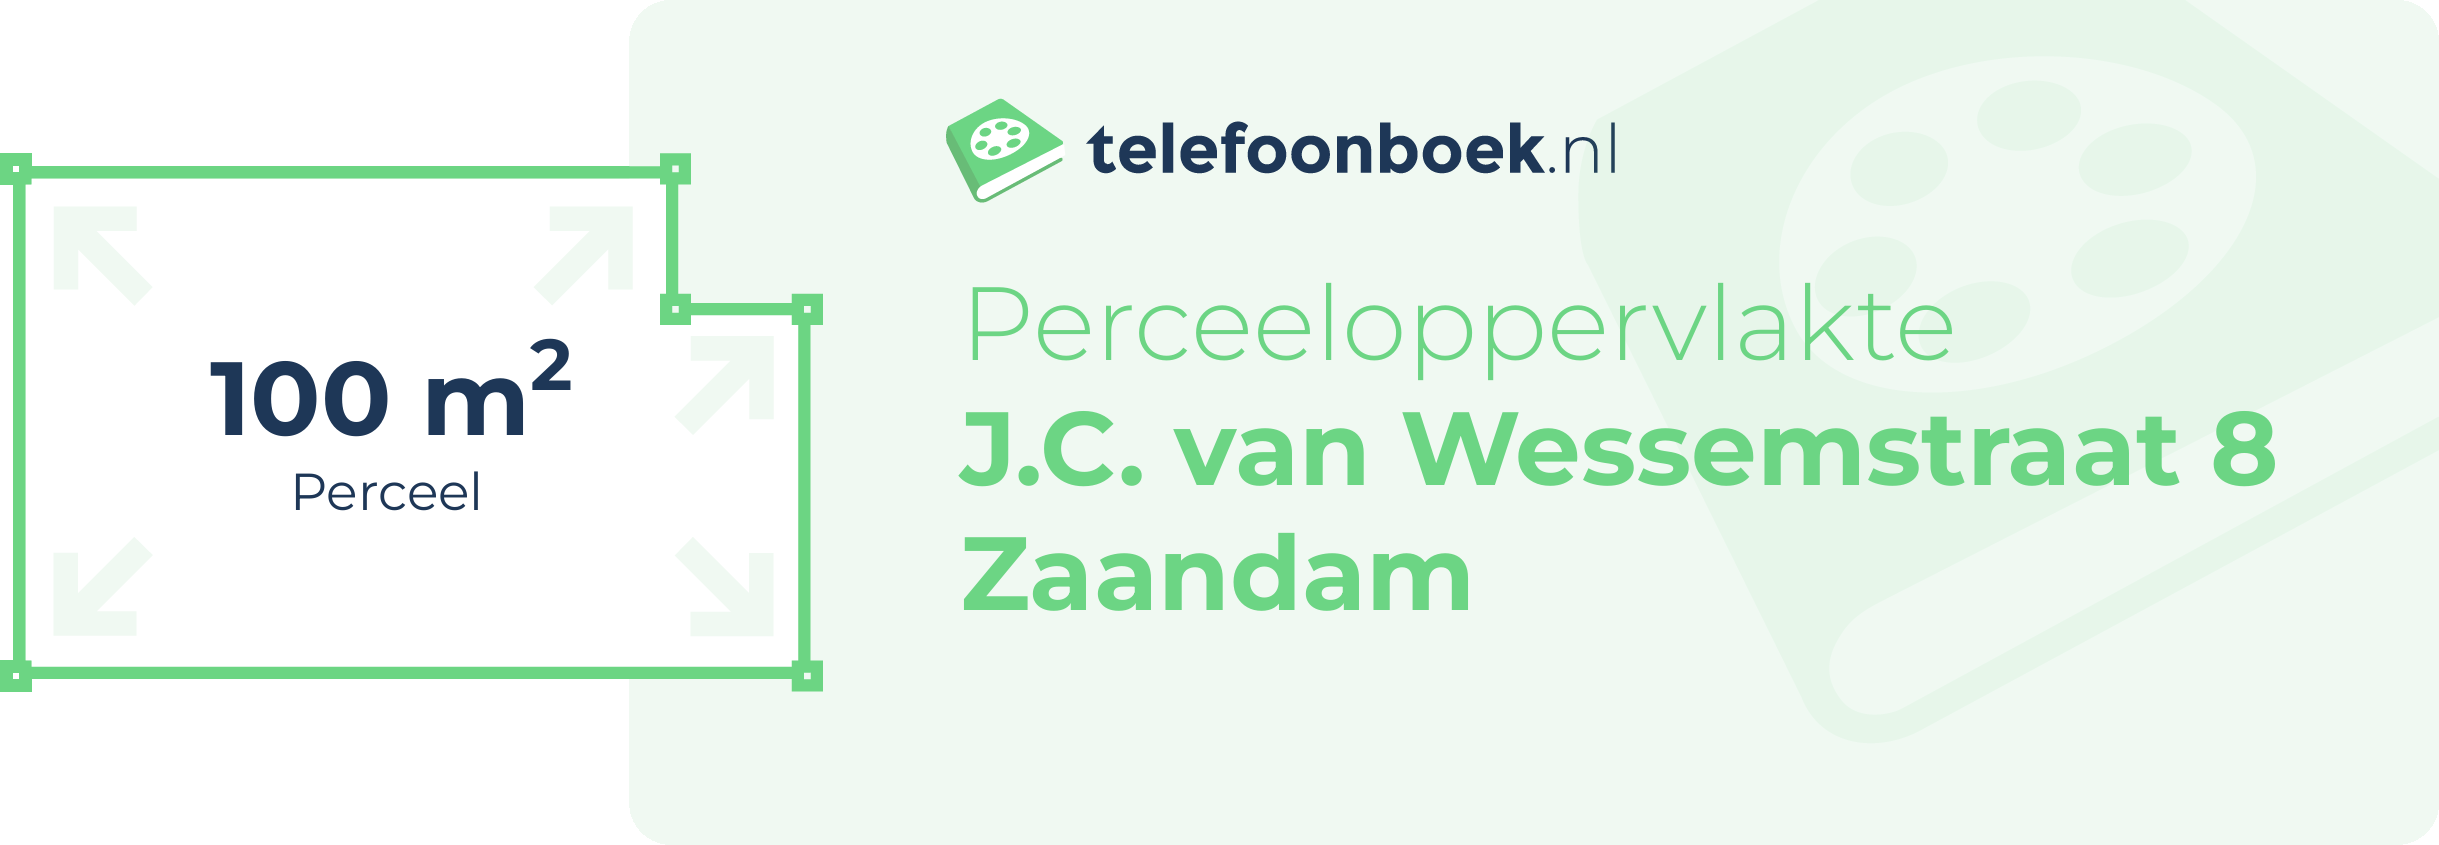 Perceeloppervlakte J.C. Van Wessemstraat 8 Zaandam